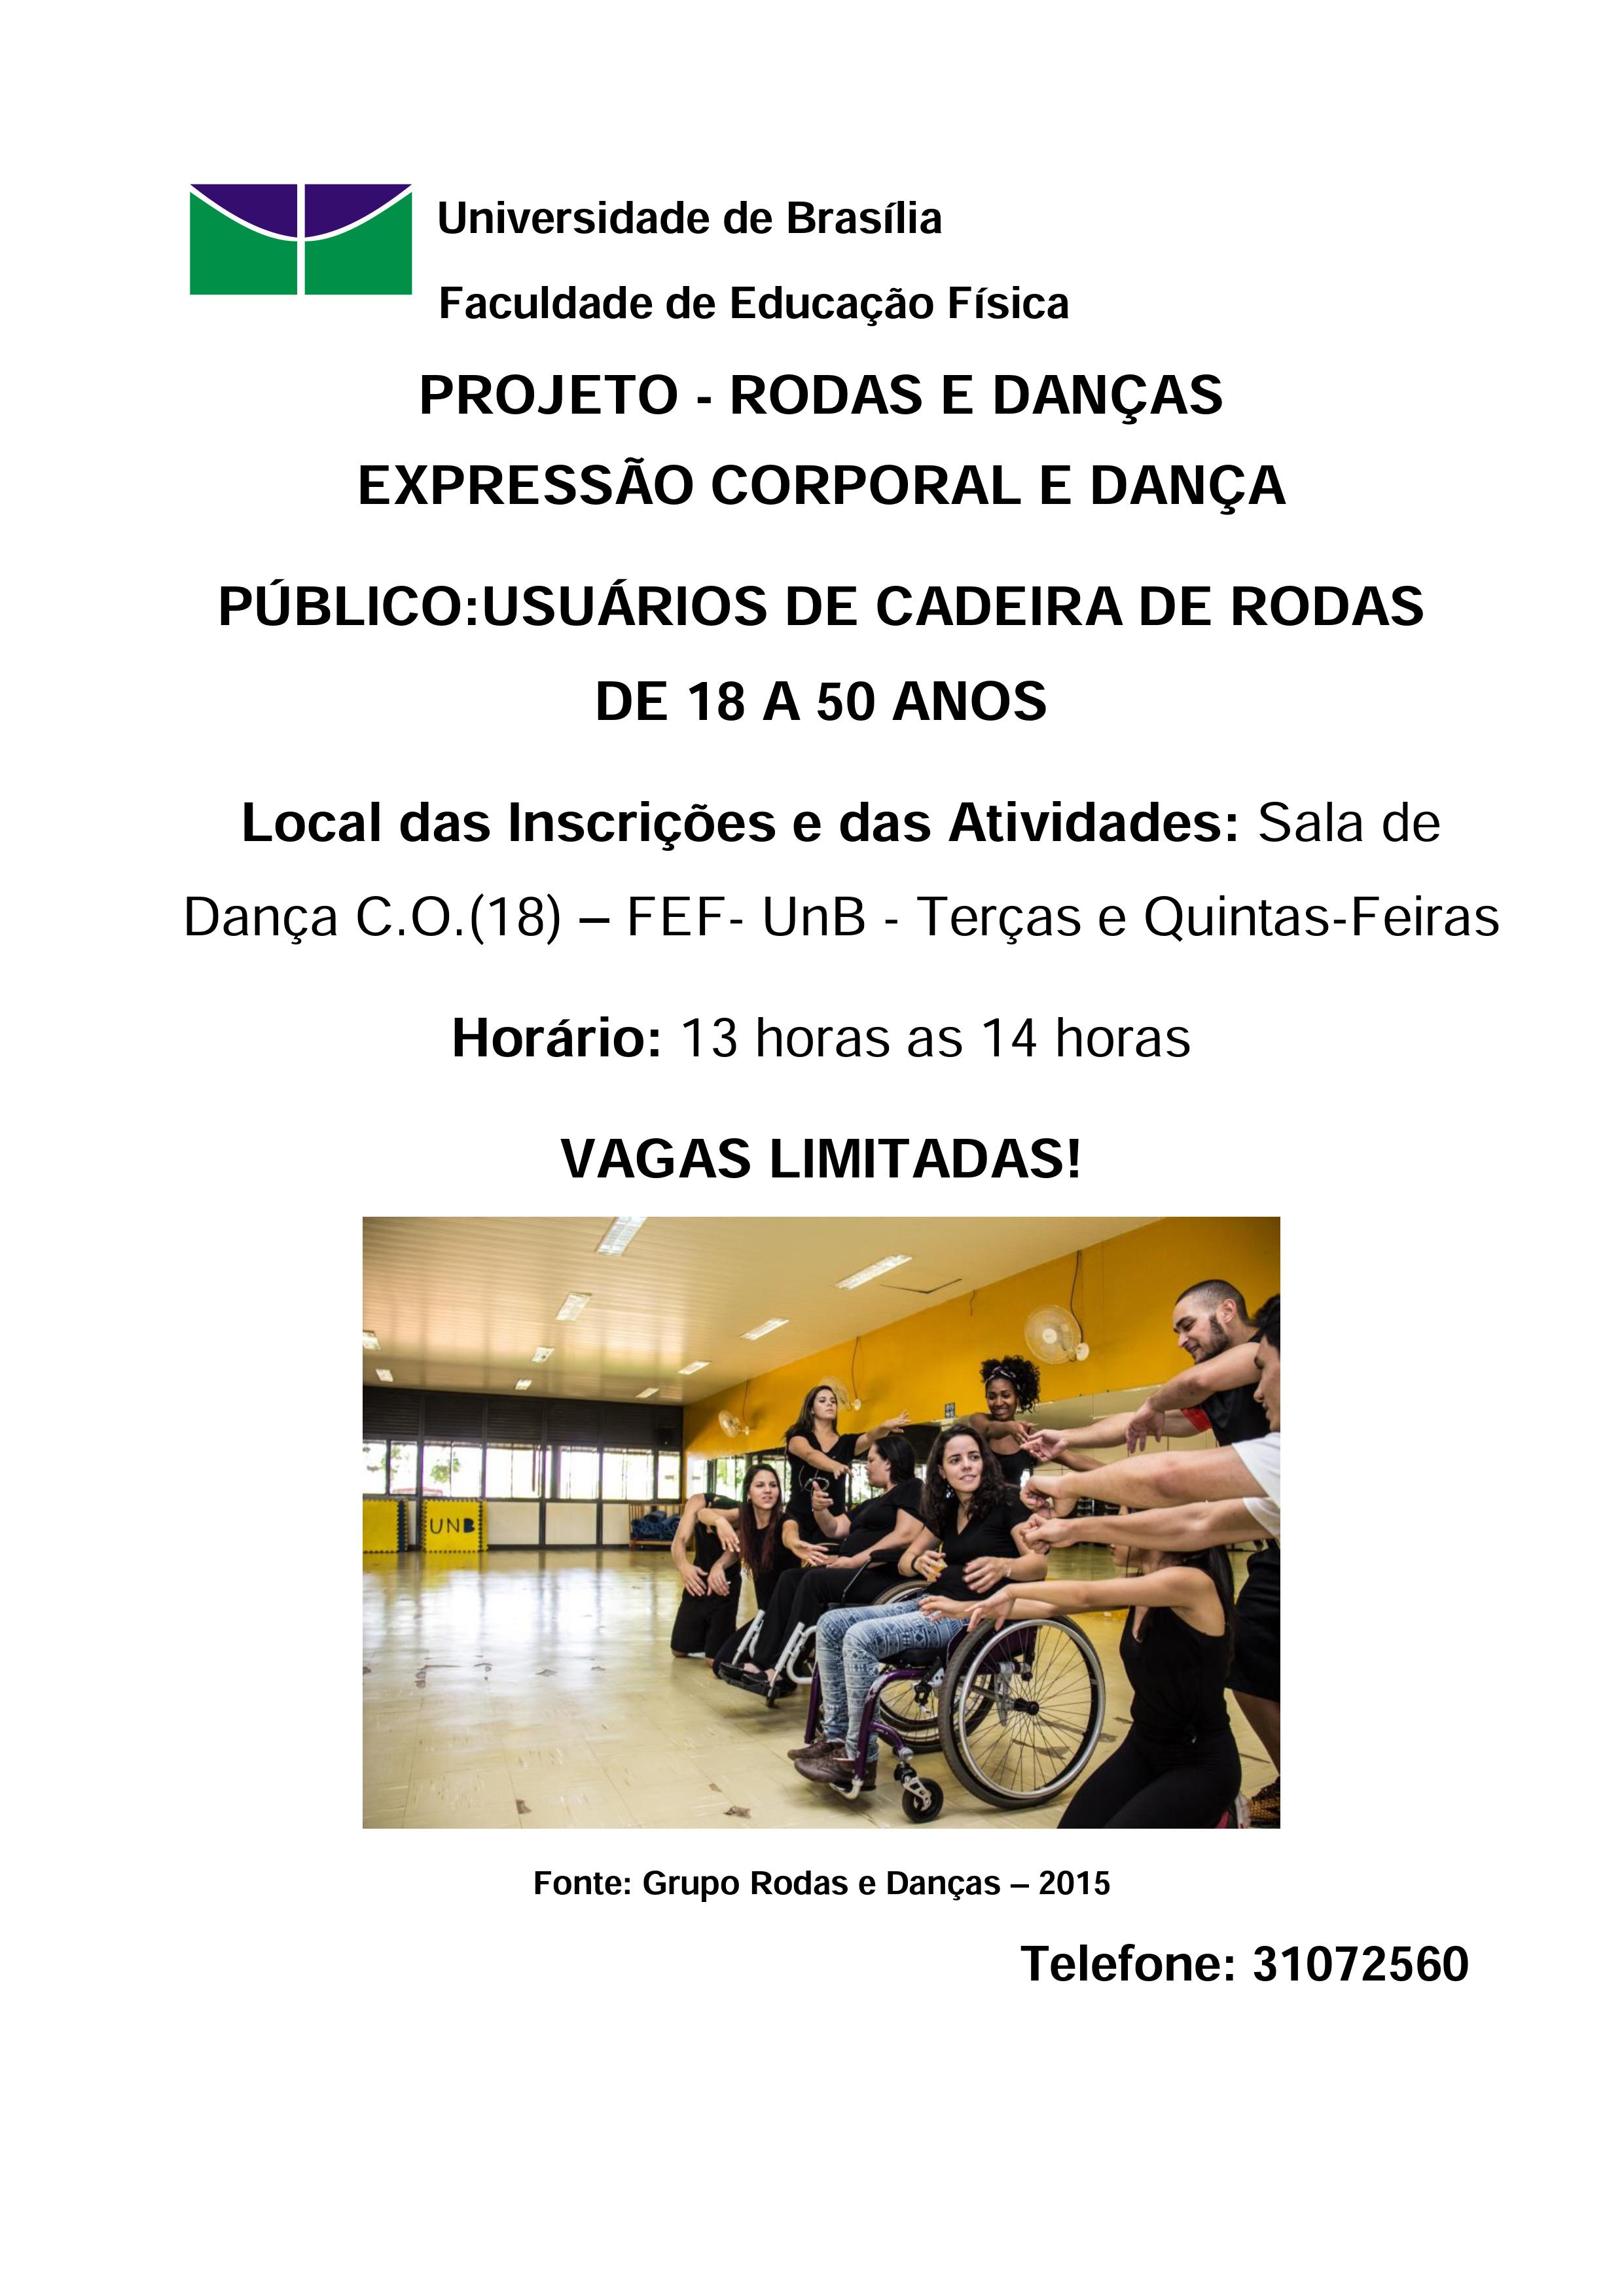 Projeto Rodas e Danças